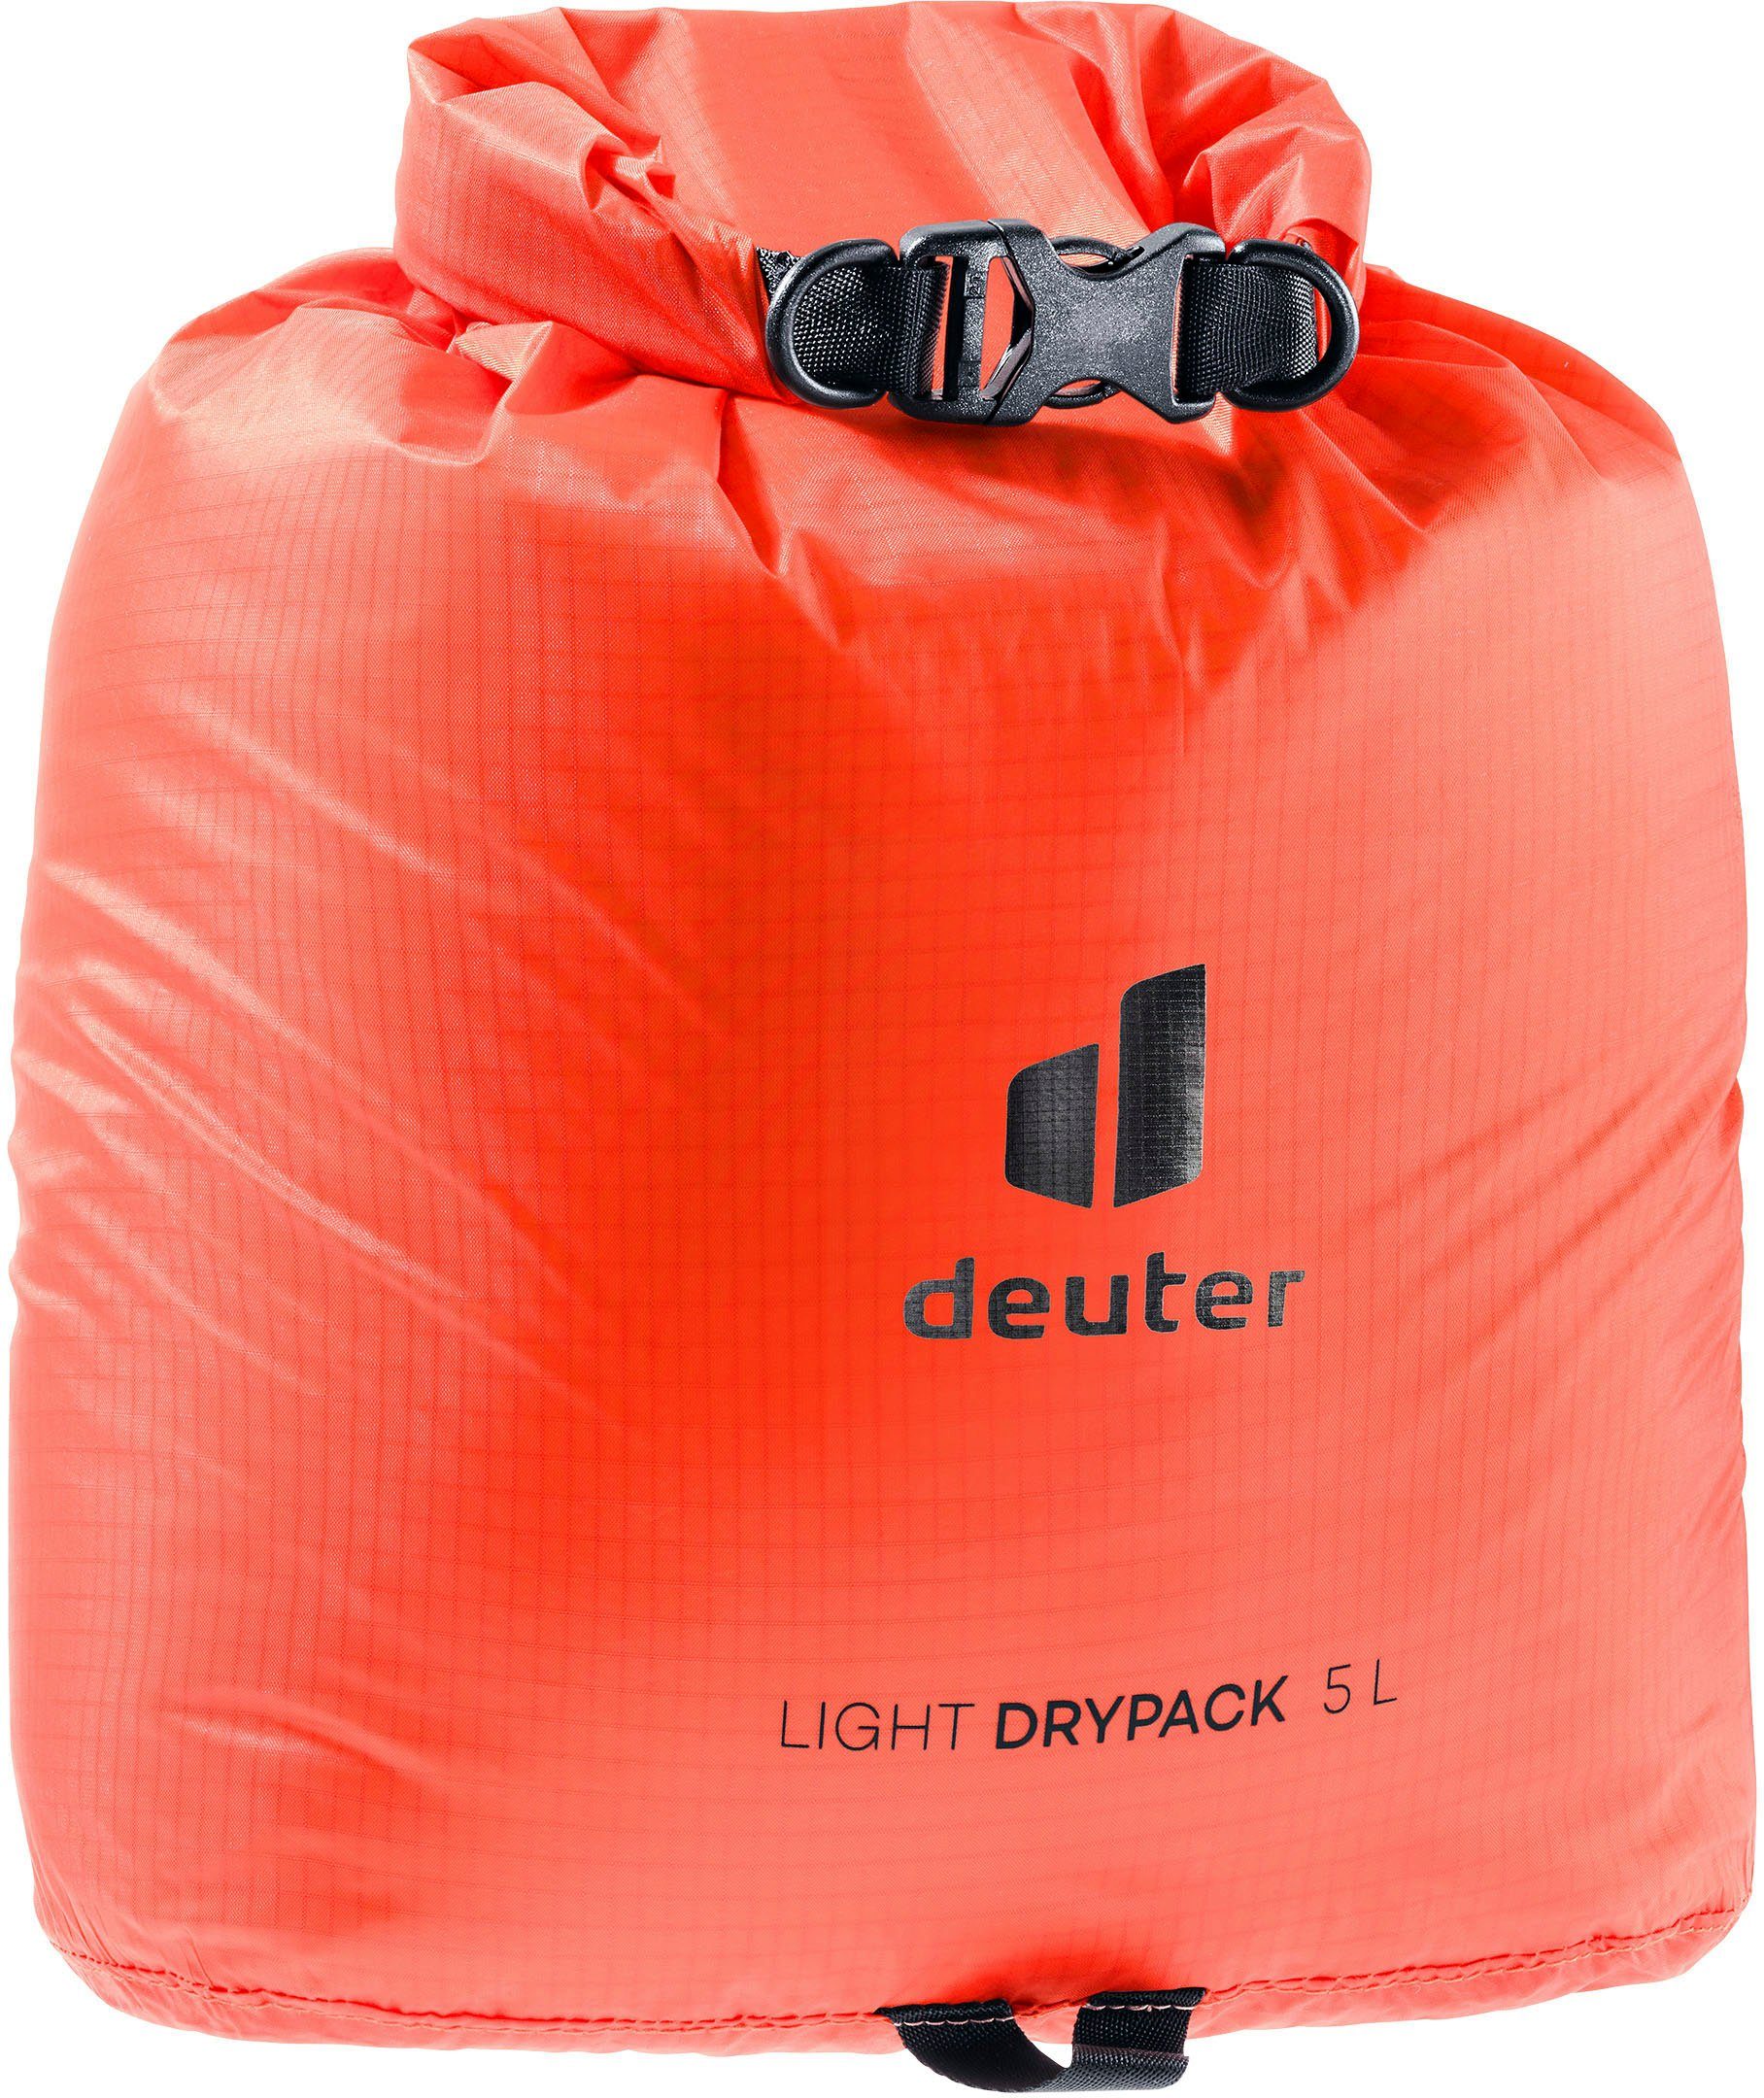 Drypack Aufbewahrungstasche 3940121 9002 papay deuter 5, Light